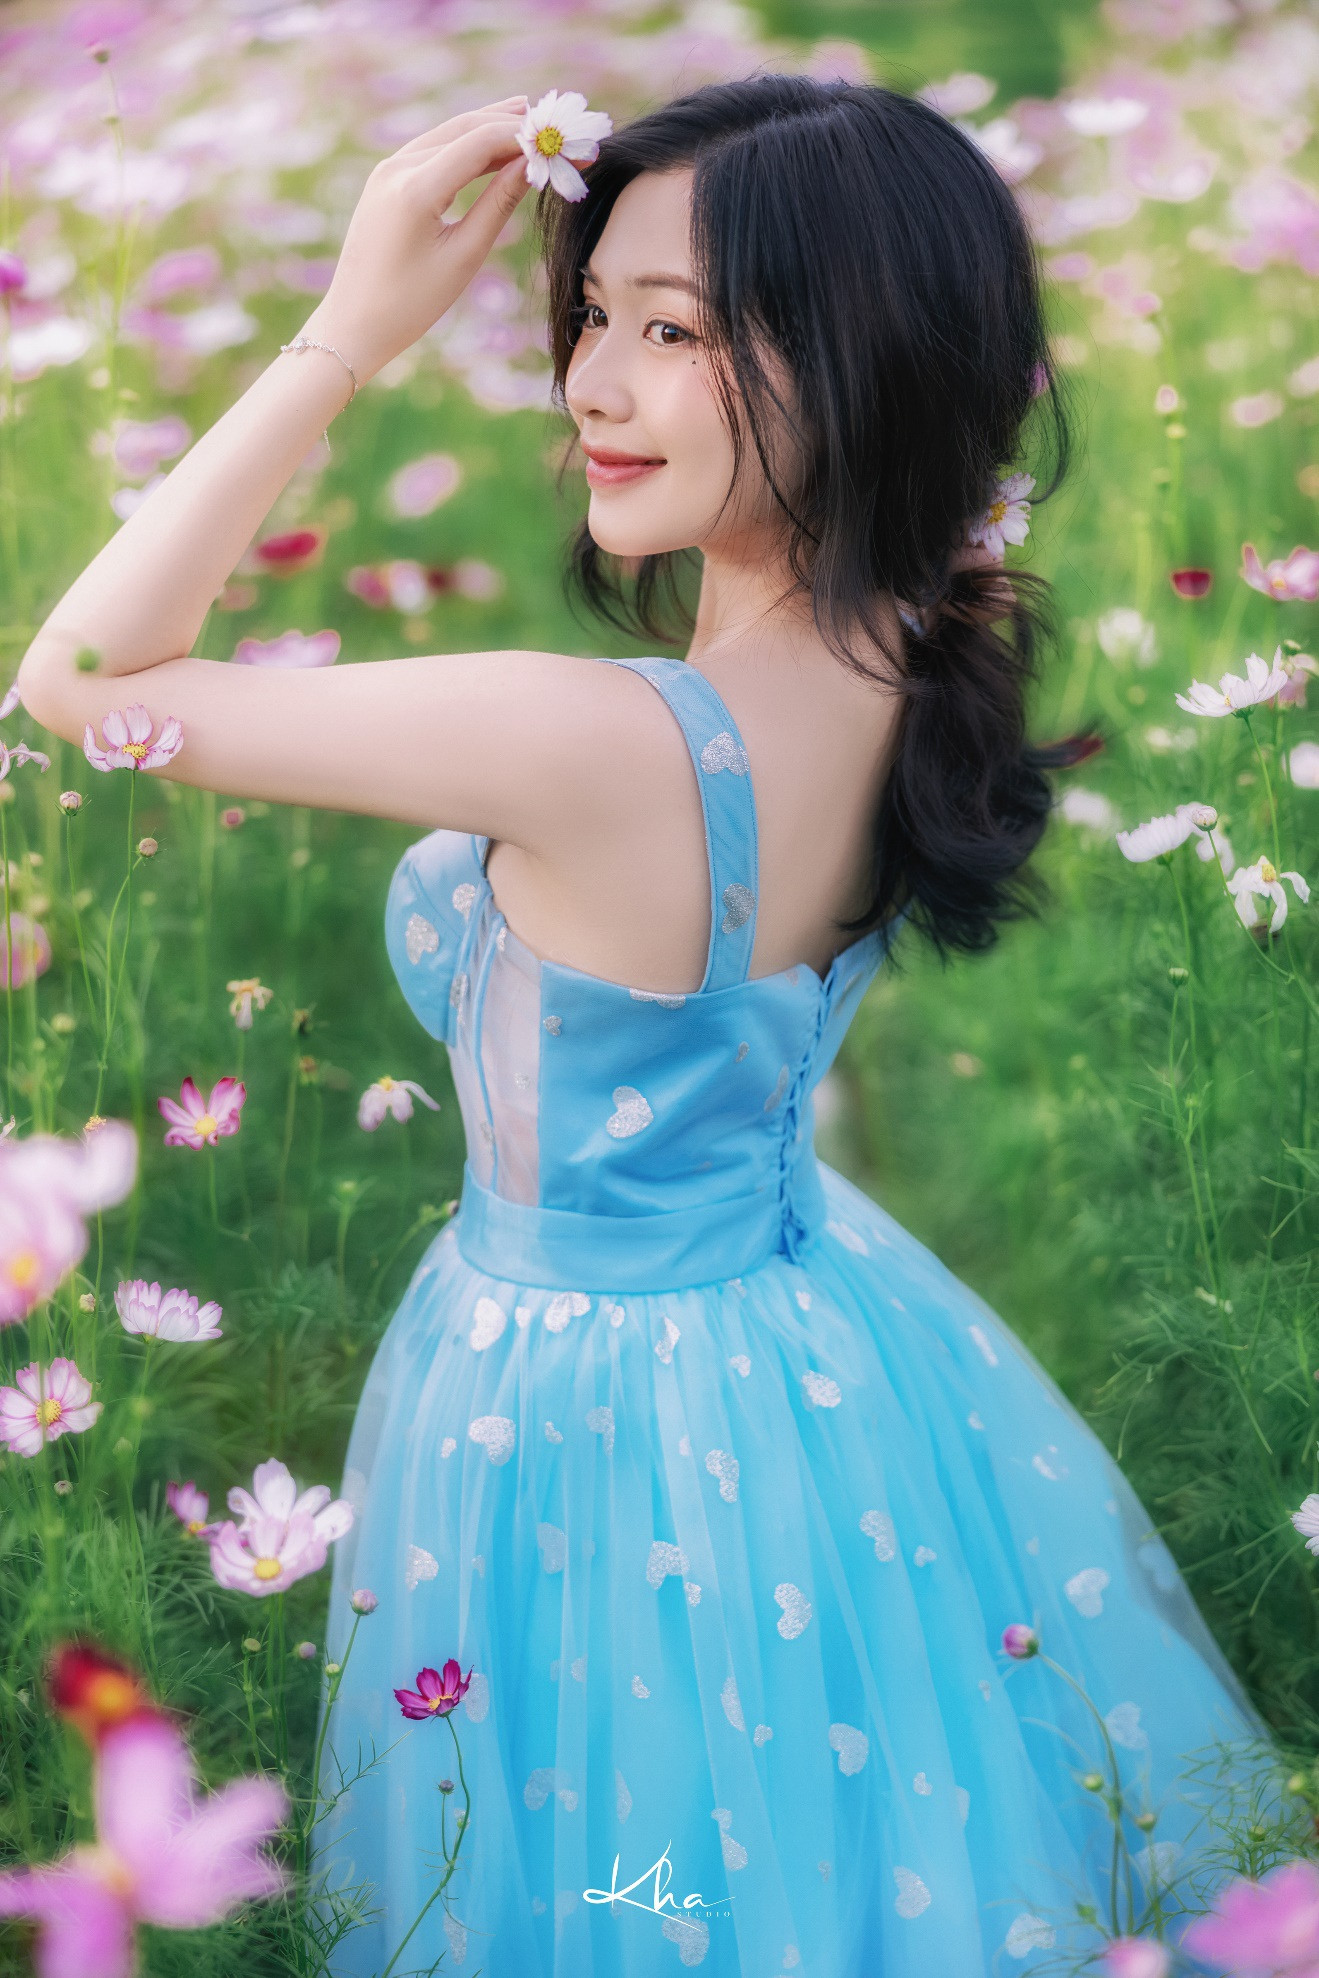 Thiếu nữ Kiên Giang khoe nét xuân thì giữa vườn hoa ngập sắc màu - 2